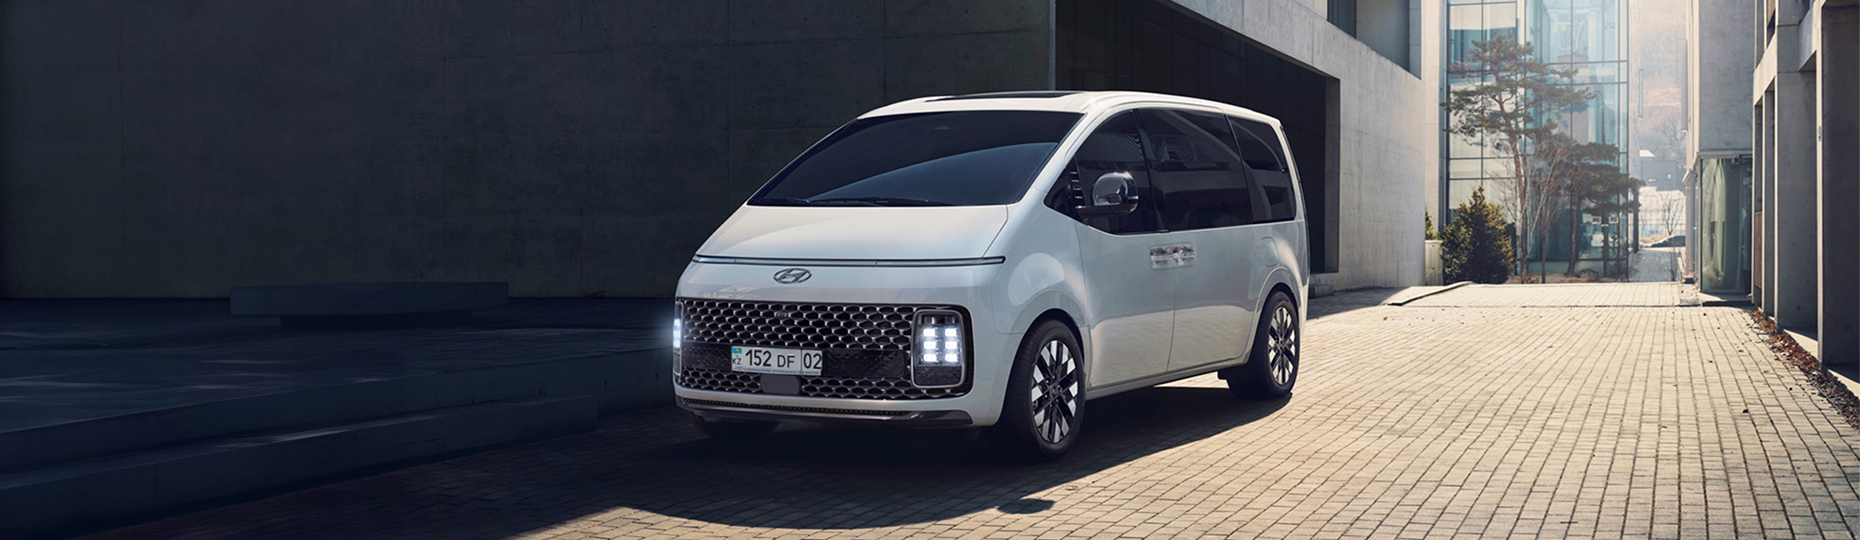 Производительность нового Hyundai Staria | Официальный дилер в Алматы